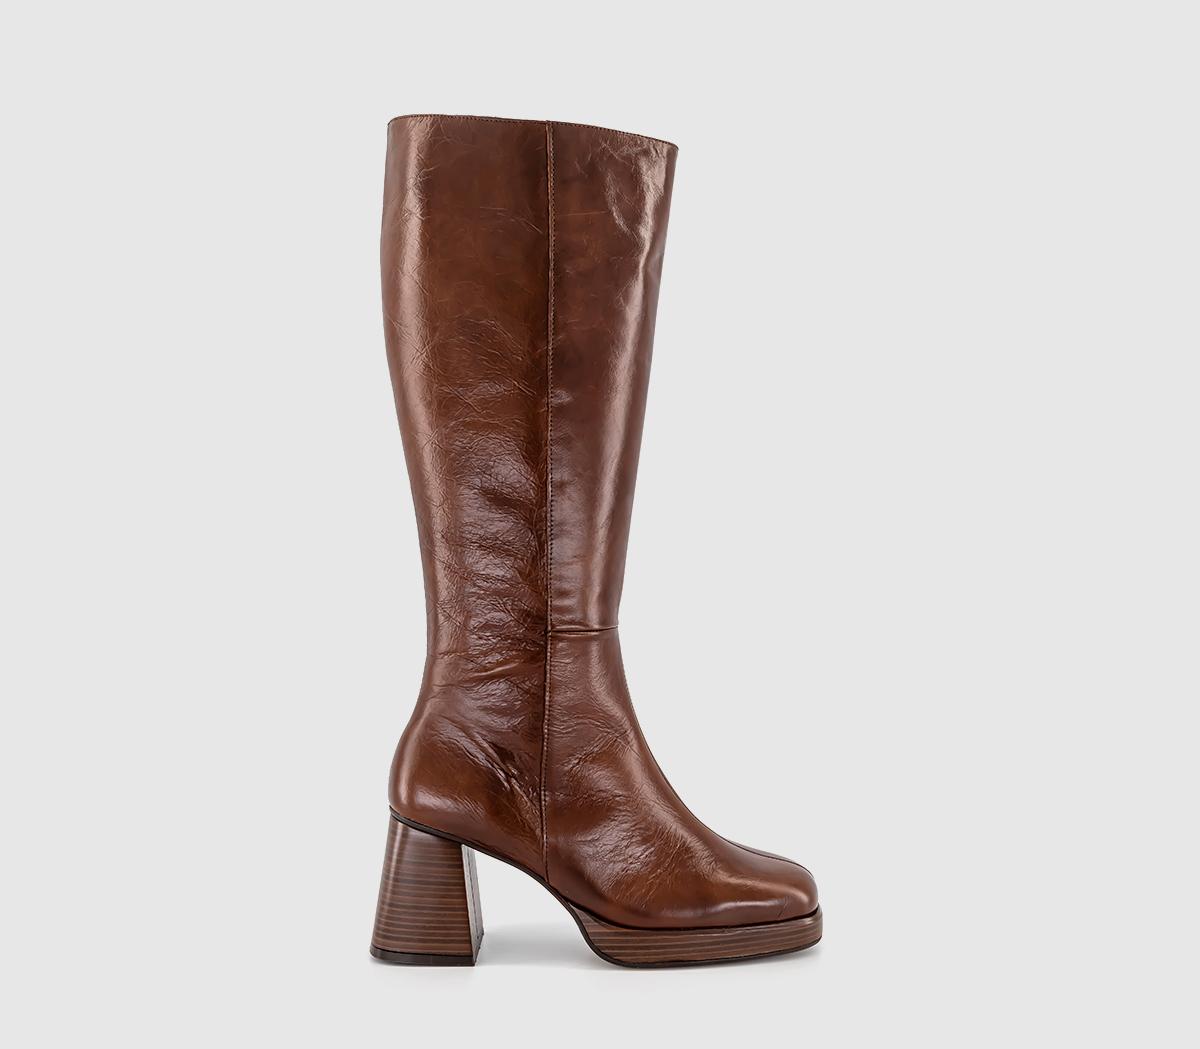 OFFICEKlara Platform Heeled Knee BootsChoc Brown Leather